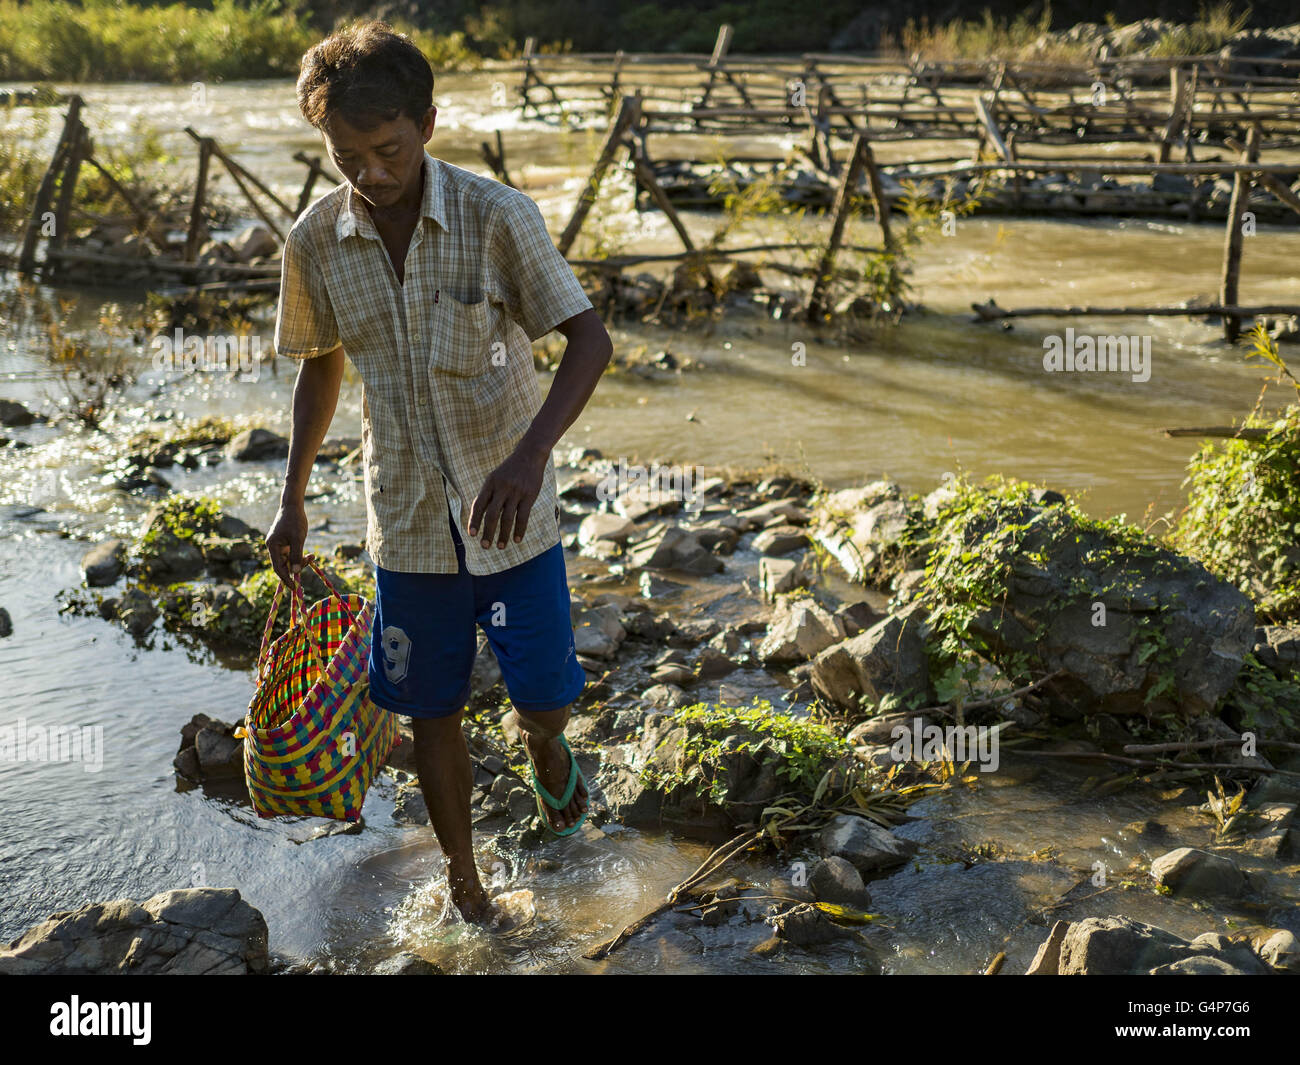 Giugno 19, 2016 - Don Khone, Champasak, Laos - un pescatore cammina indietro alla riva con la sua cattura in Khon Pa Cascate di Soi, sul lato est di Don Khon. È la più piccola delle due cascate in Don Khon. I pescatori hanno costruito un elaborato sistema di ponti di corda sopra le cascate che utilizzano per raggiungere il pesce trappole hanno impostato. I pescatori della zona si contende con rese inferiori e i pesci più piccoli, che minacciano il loro modo di vita. Il fiume Mekong è uno dei più biodiversi e produttivi fiumi sulla terra. Si tratta di un hotspot globali per i pesci di acqua dolce: oltre mille specie sono stati registrati, sec Foto Stock